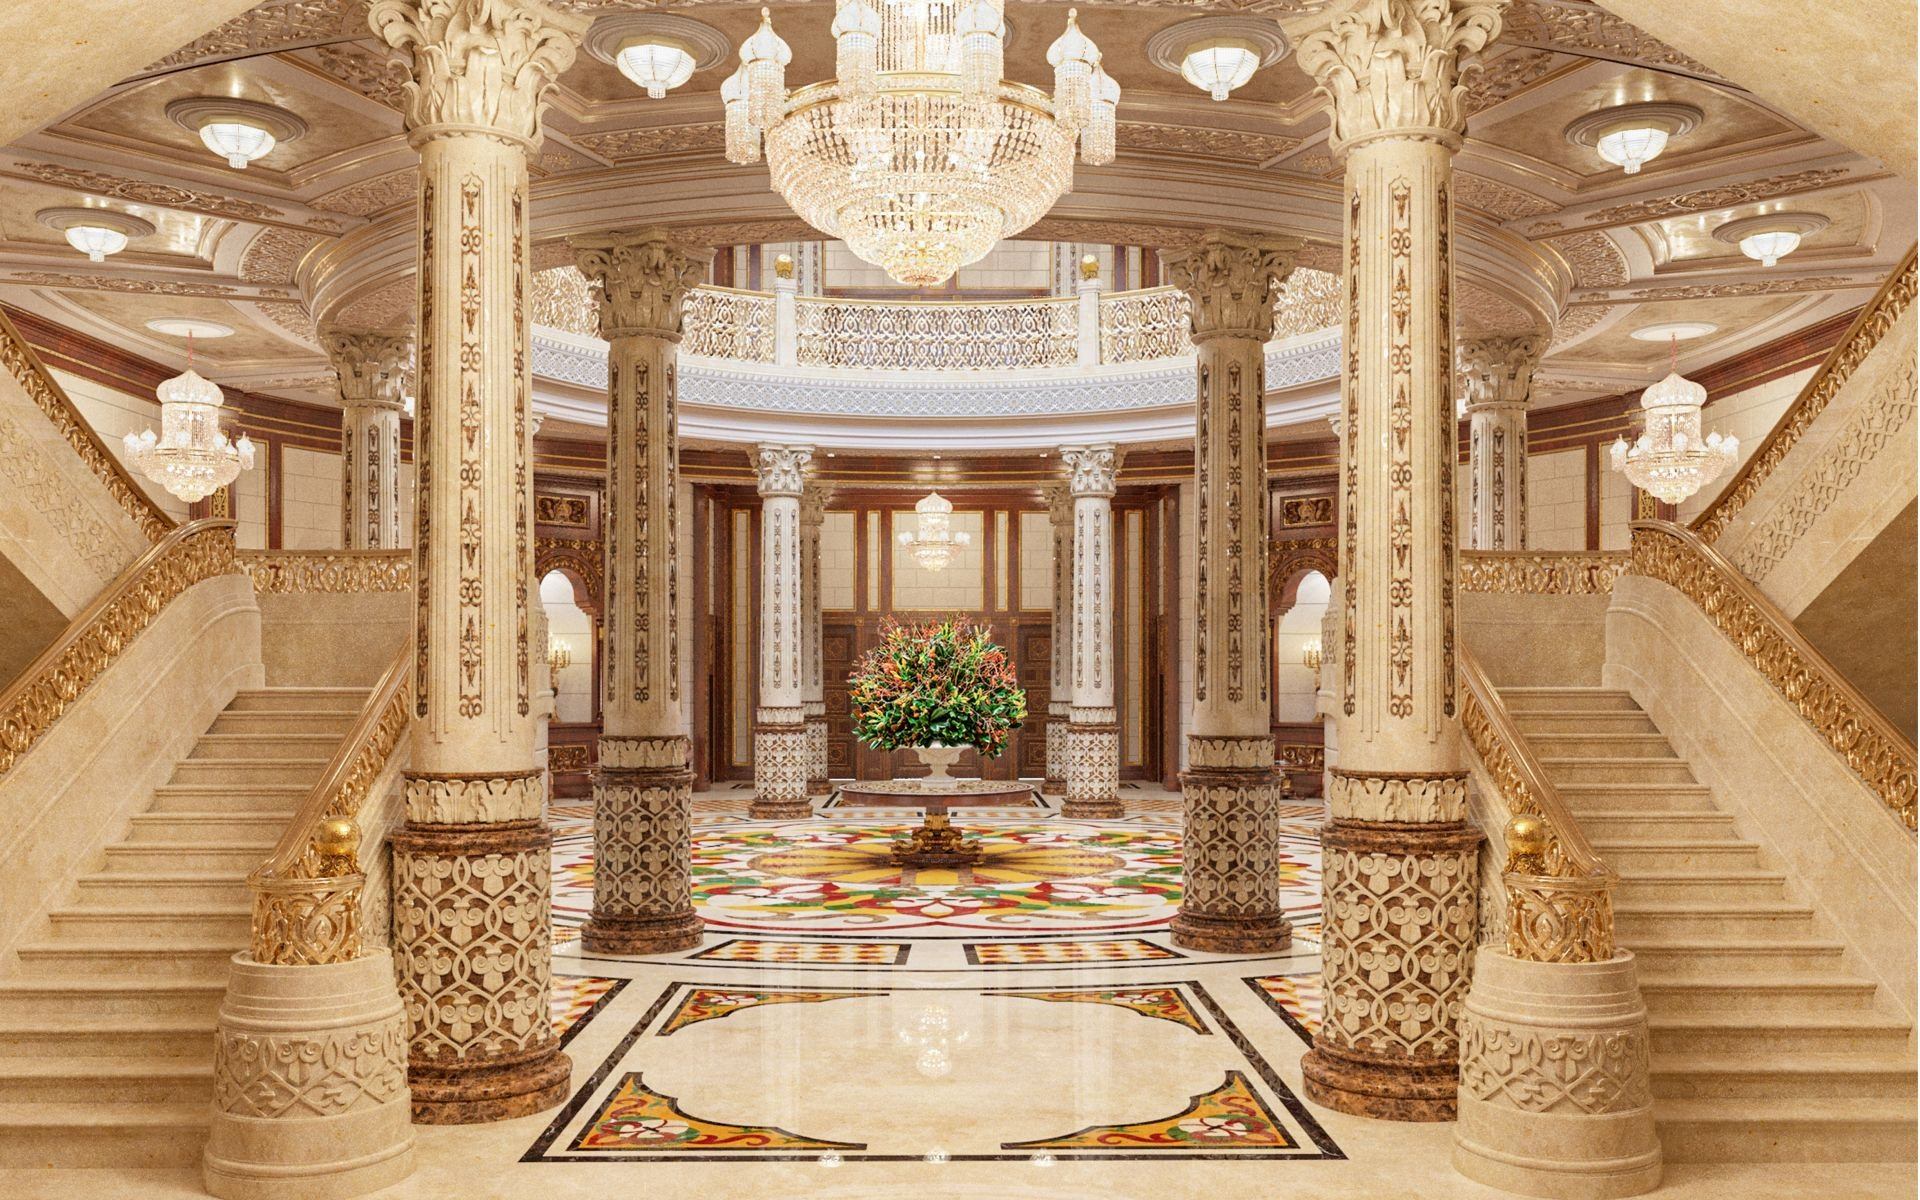 Зал резиденции. Абу Даби Королевская резиденция. Роскошный дворец. Колонны в Восточном стиле. Зал с колоннами.